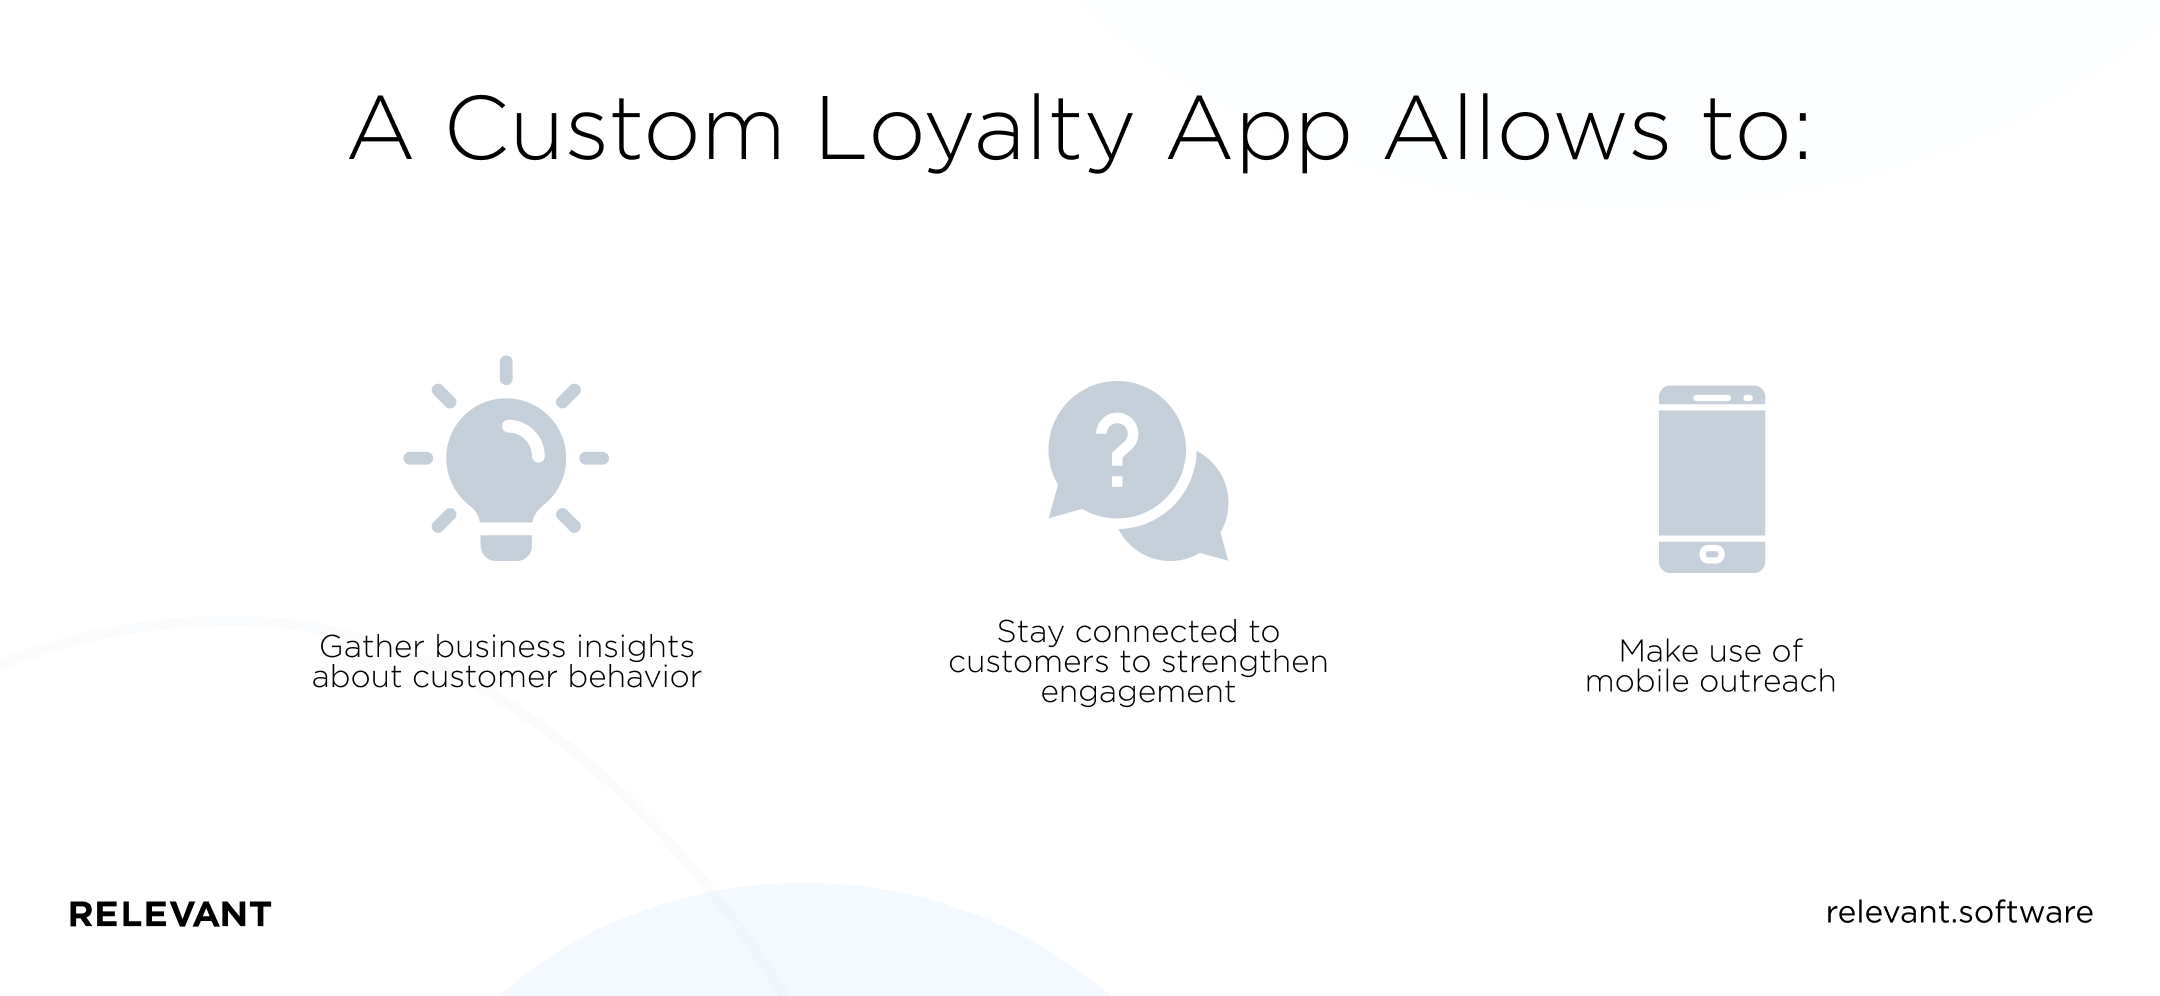 Why develop a custom loyalty app